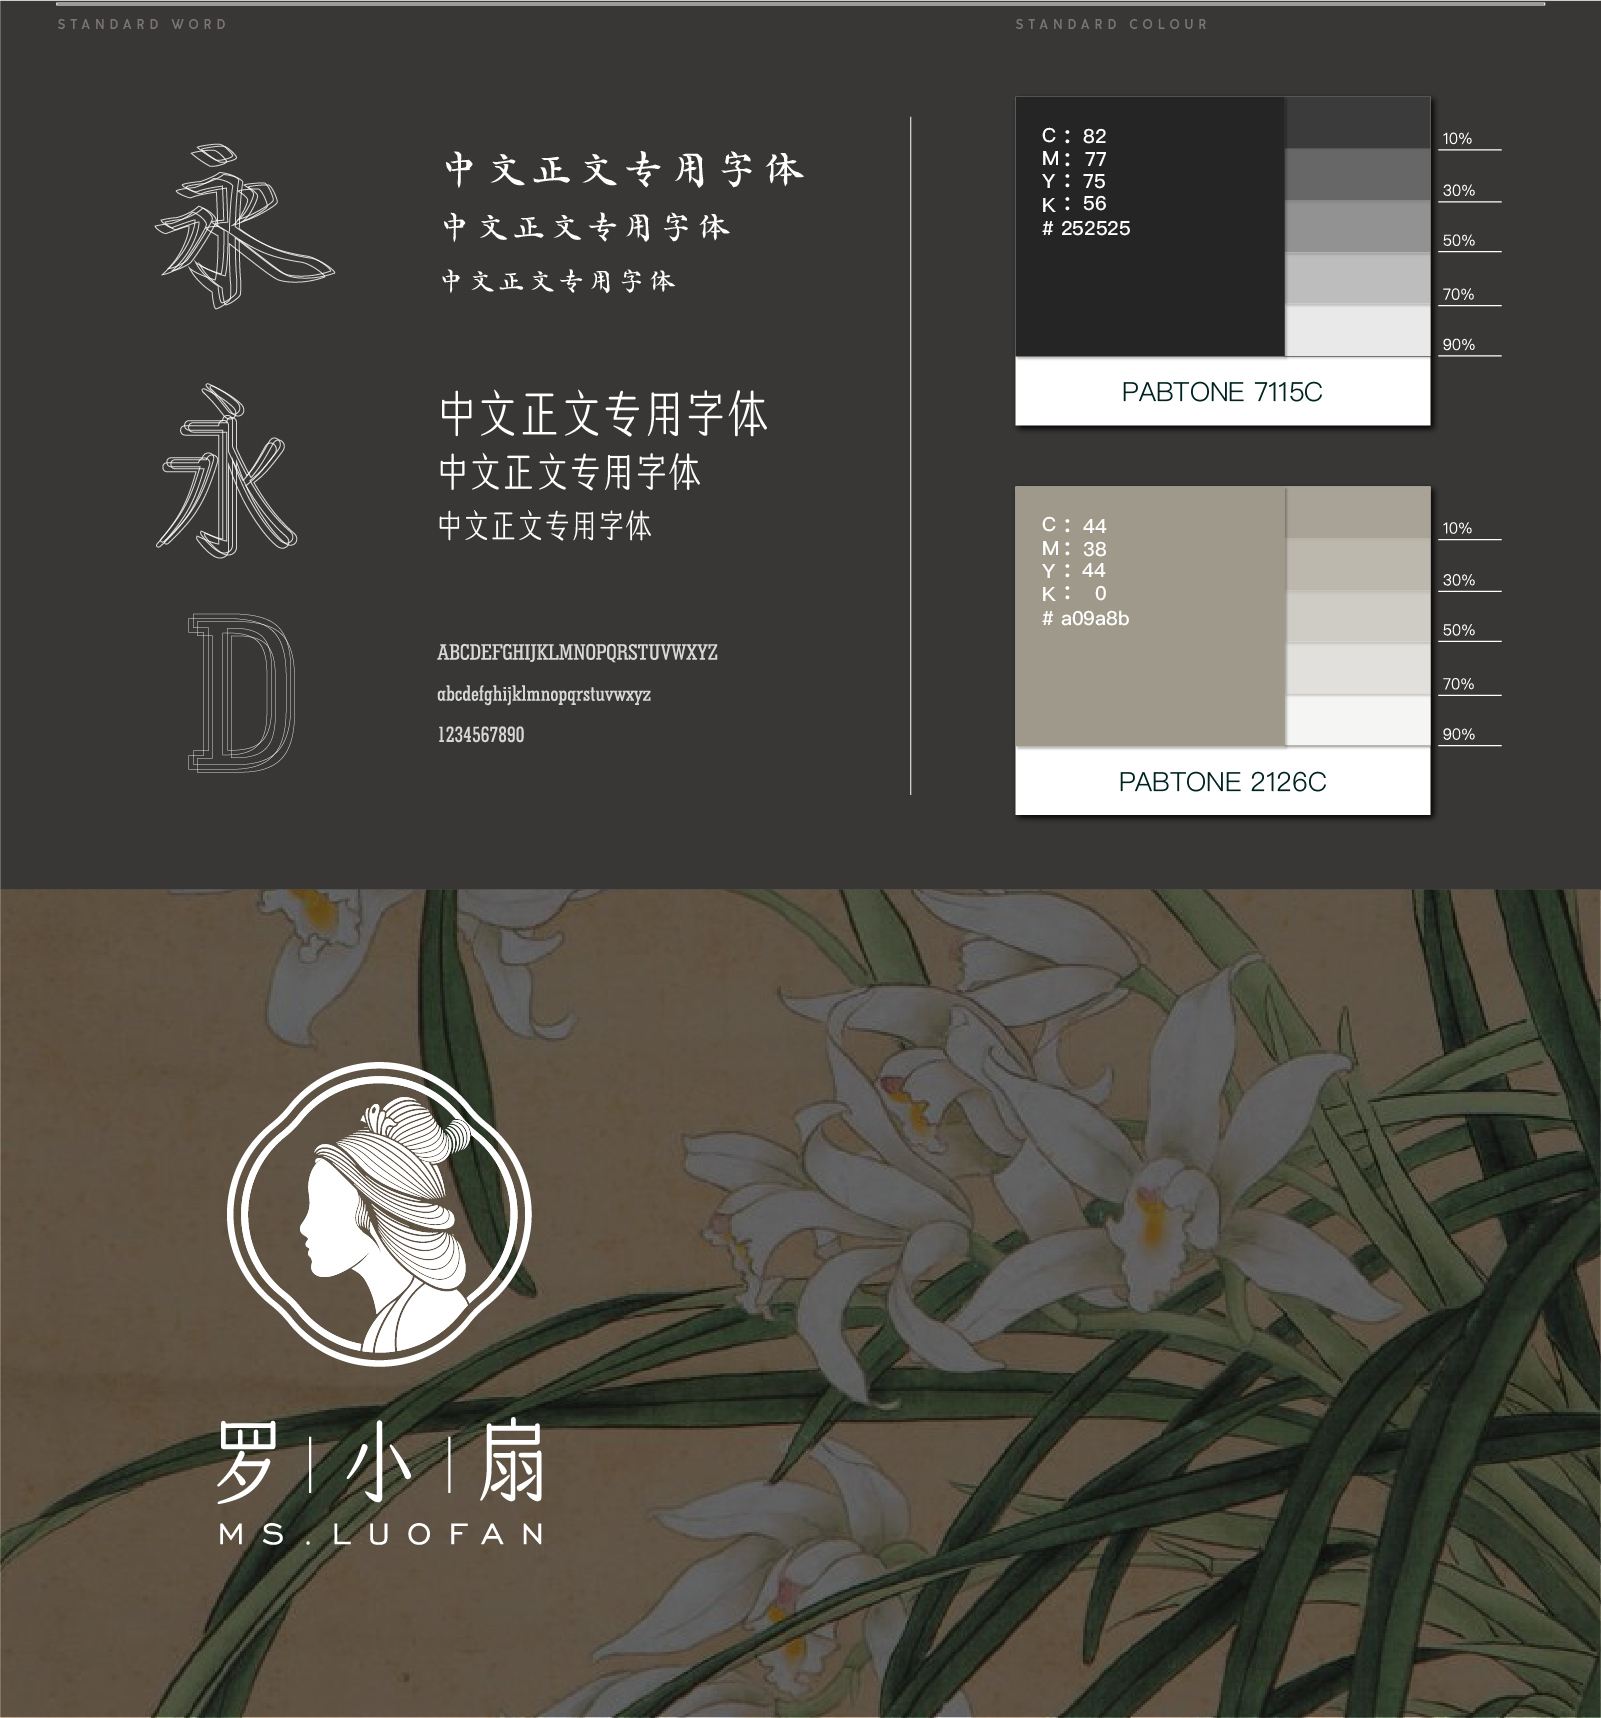 由www.kgdesign.cn完成的汉服品牌罗小扇Logo设计